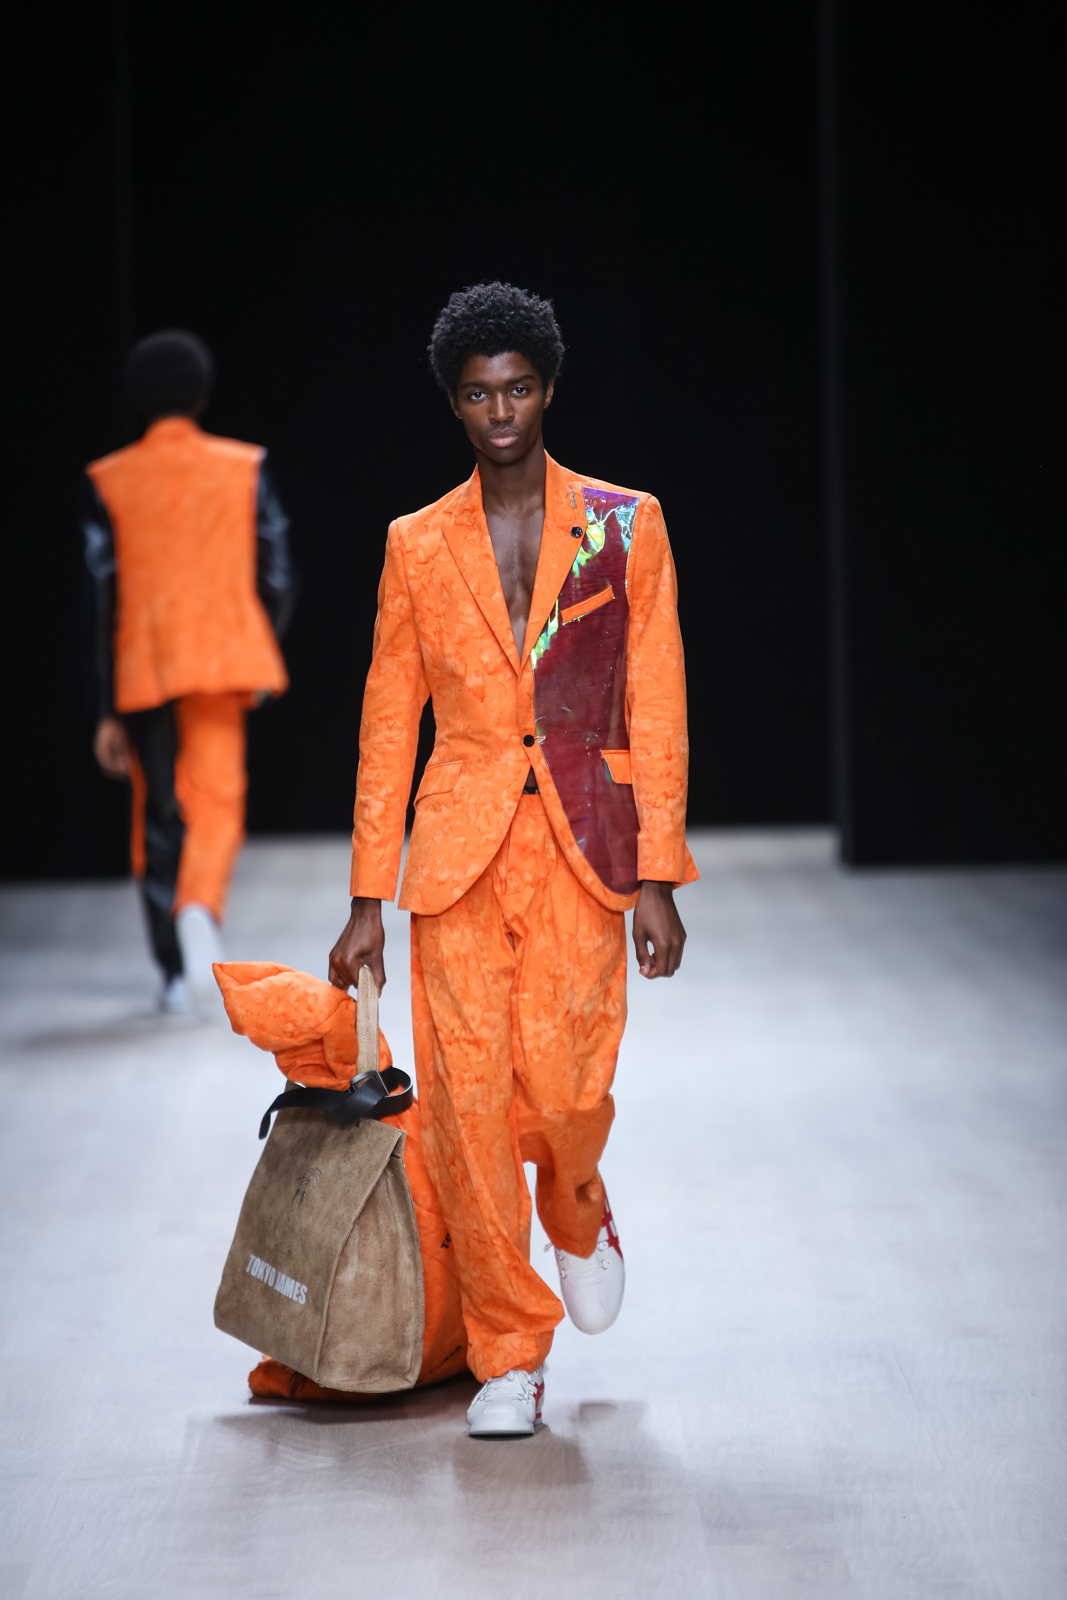 Arise Fashion Week Lagos 2019: Tokyo James